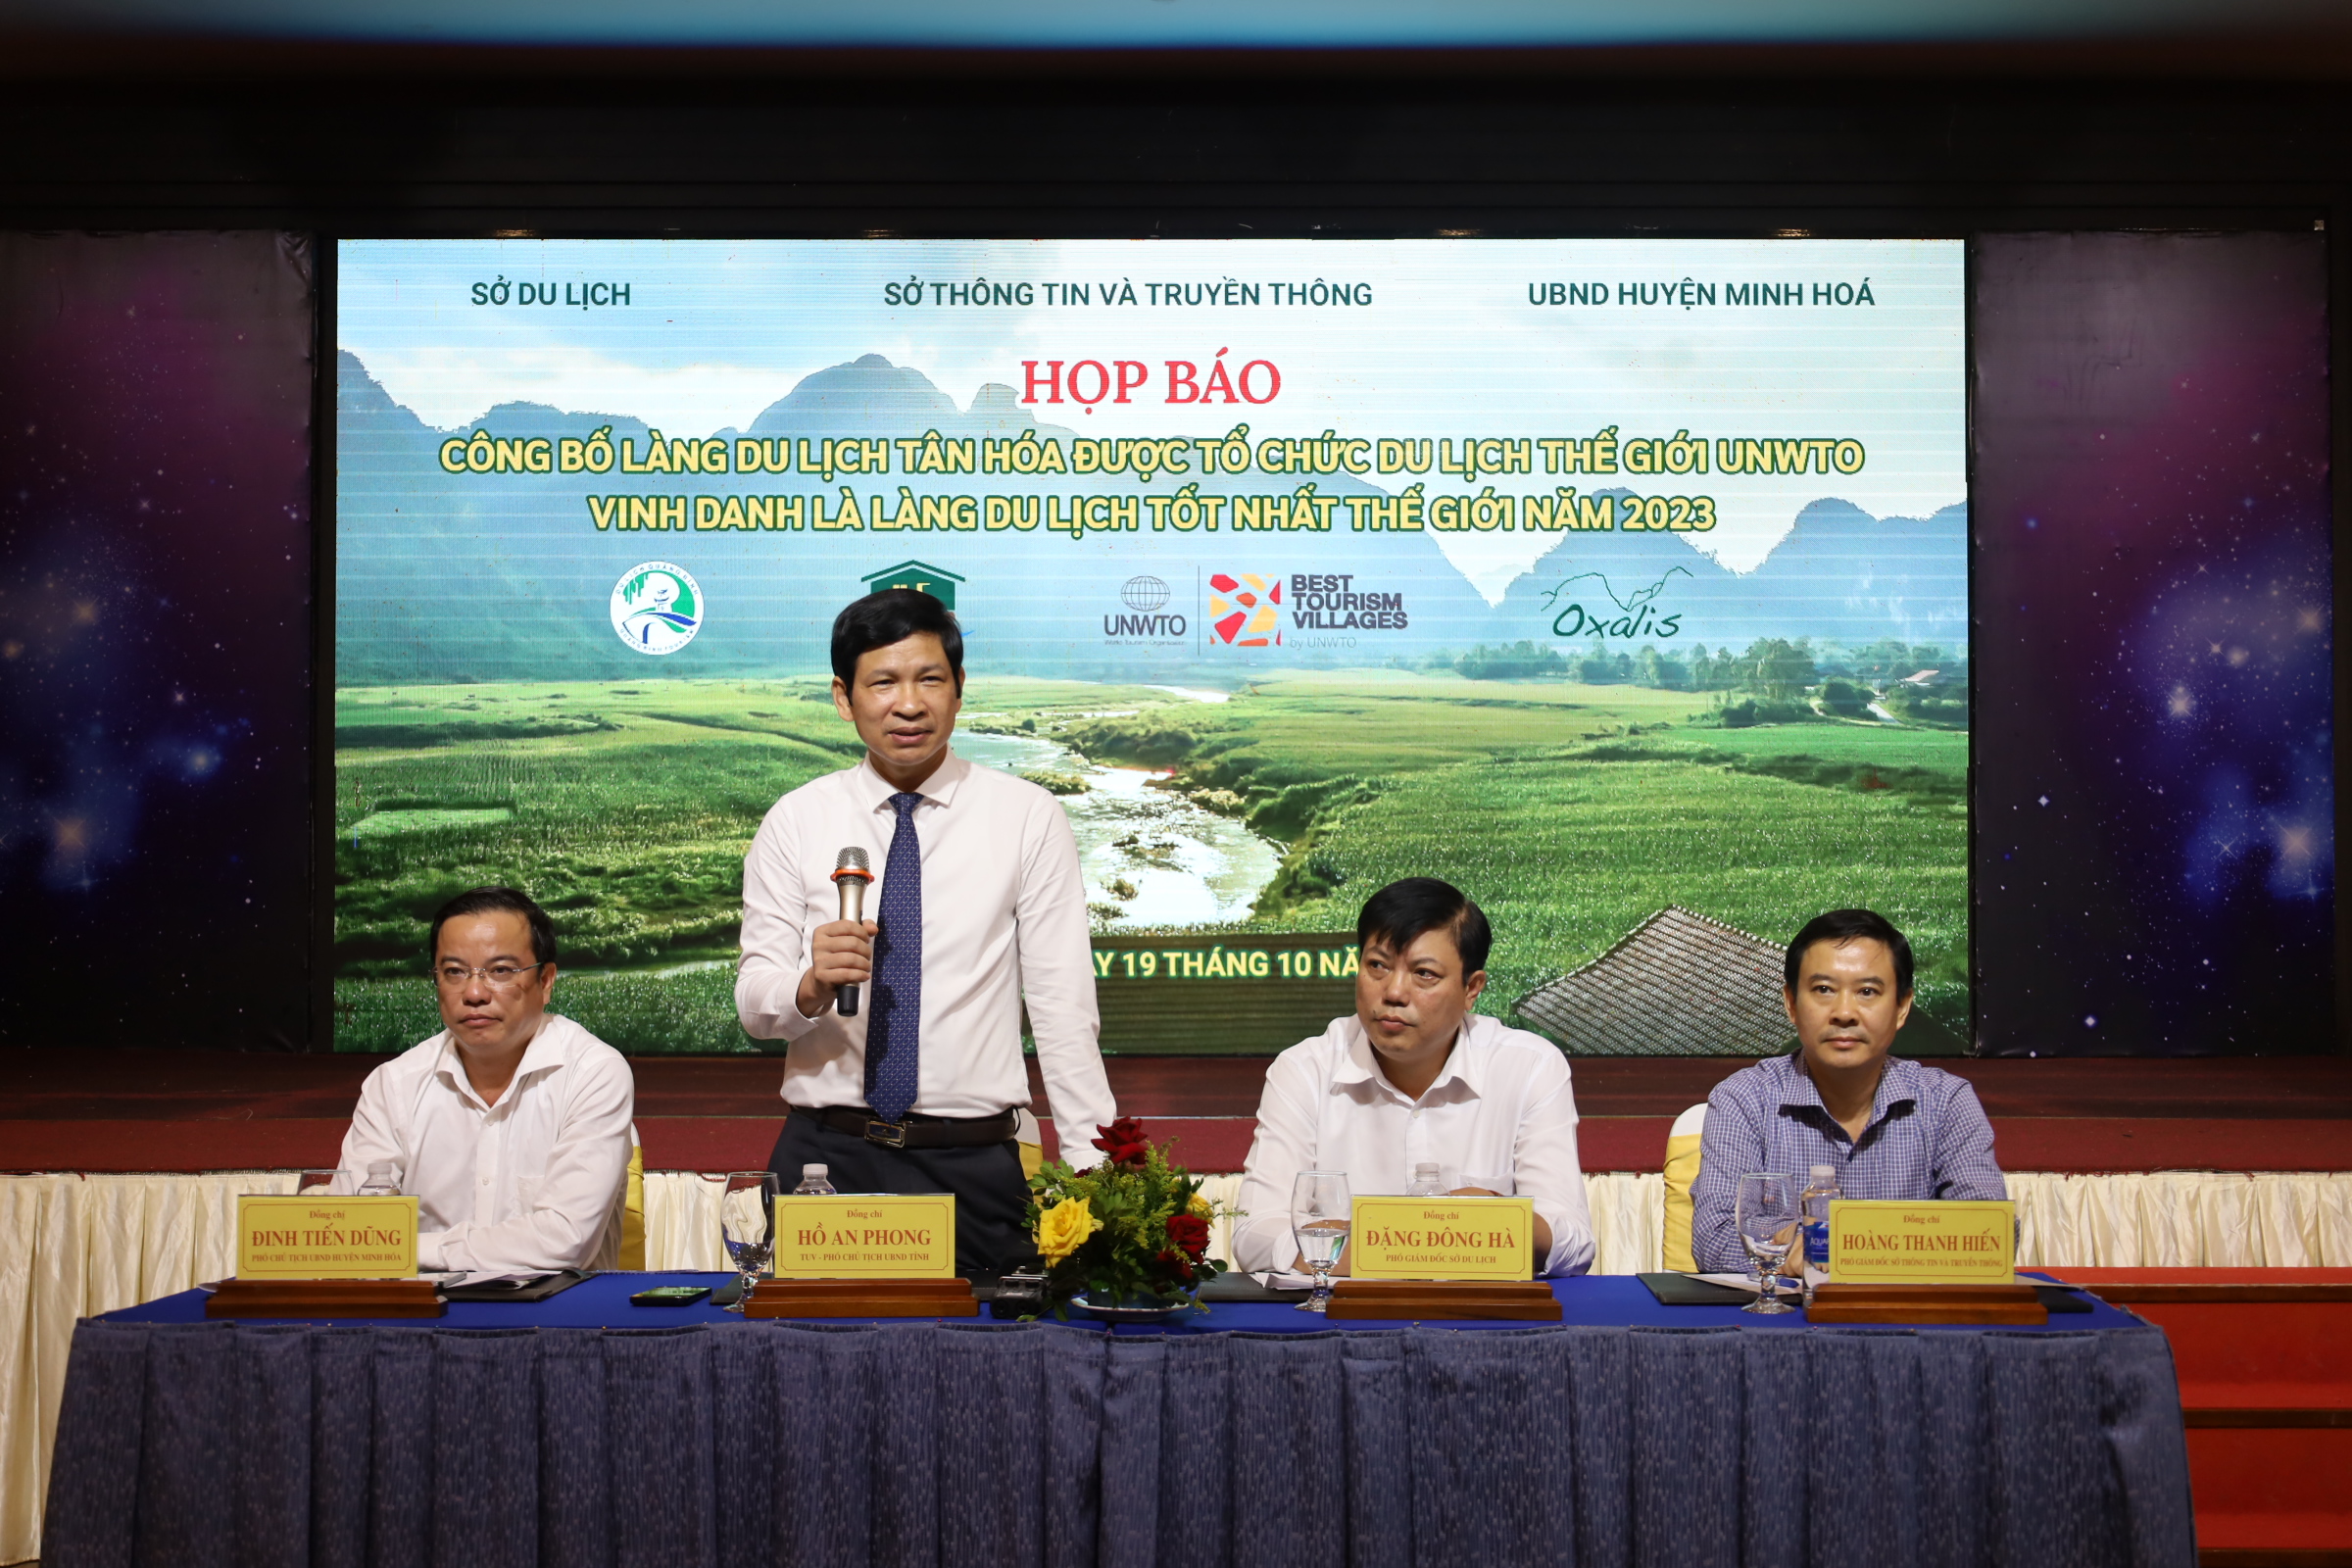 Đồng chí Phó Chủ tịch Hồ An Phong phát biểu tại buổi họp báo.